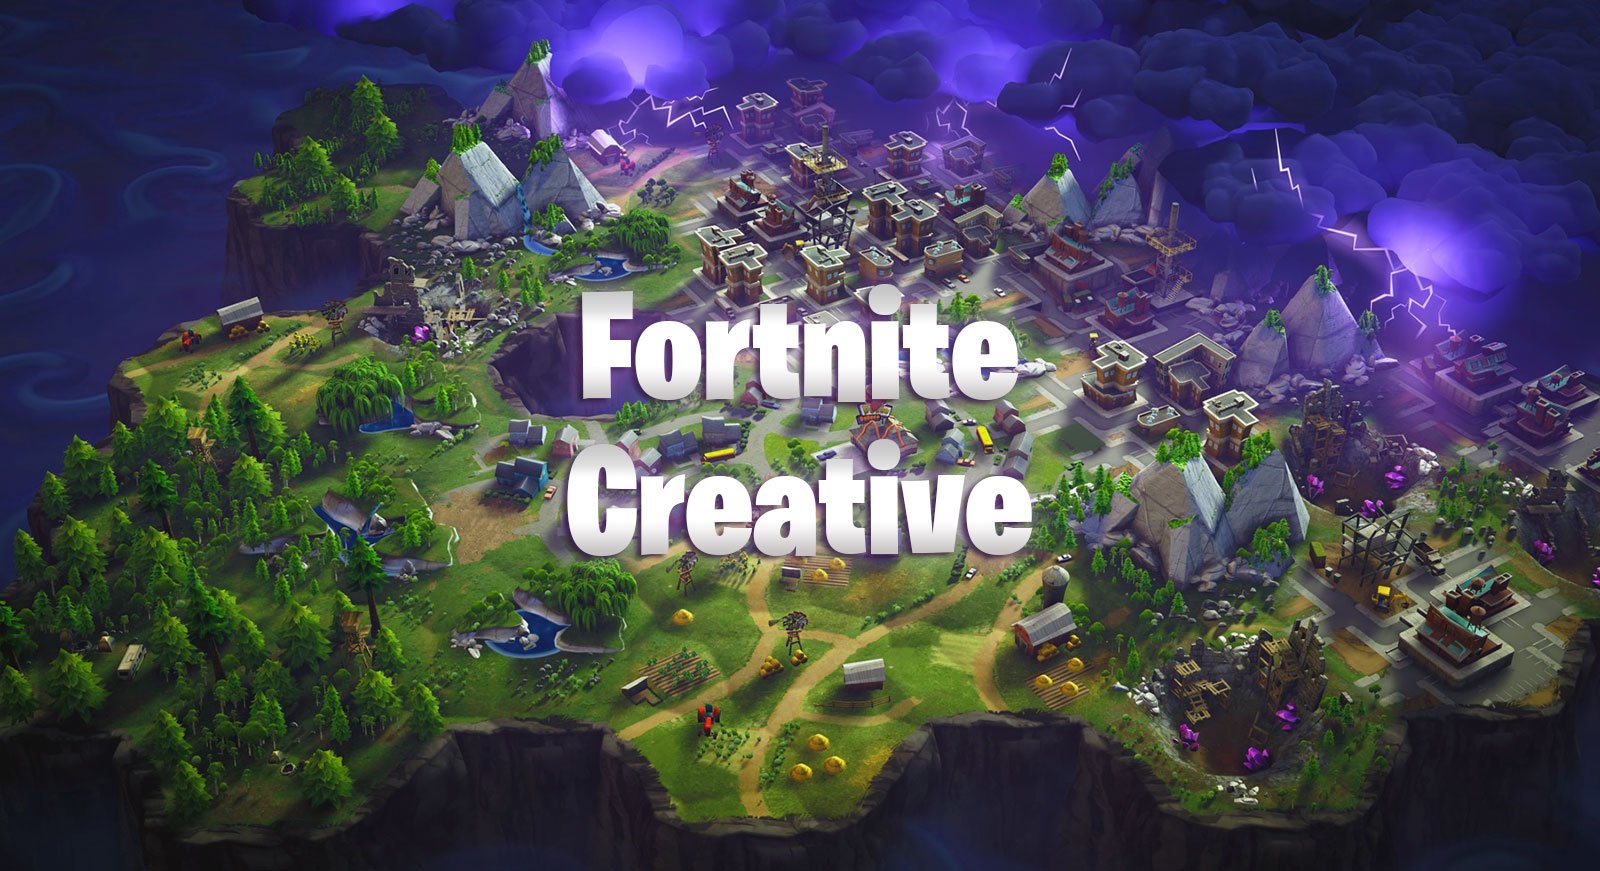 Fortnite Creative - New Leaked Game Mode – YoGaming.com - 1600 x 871 jpeg 268kB